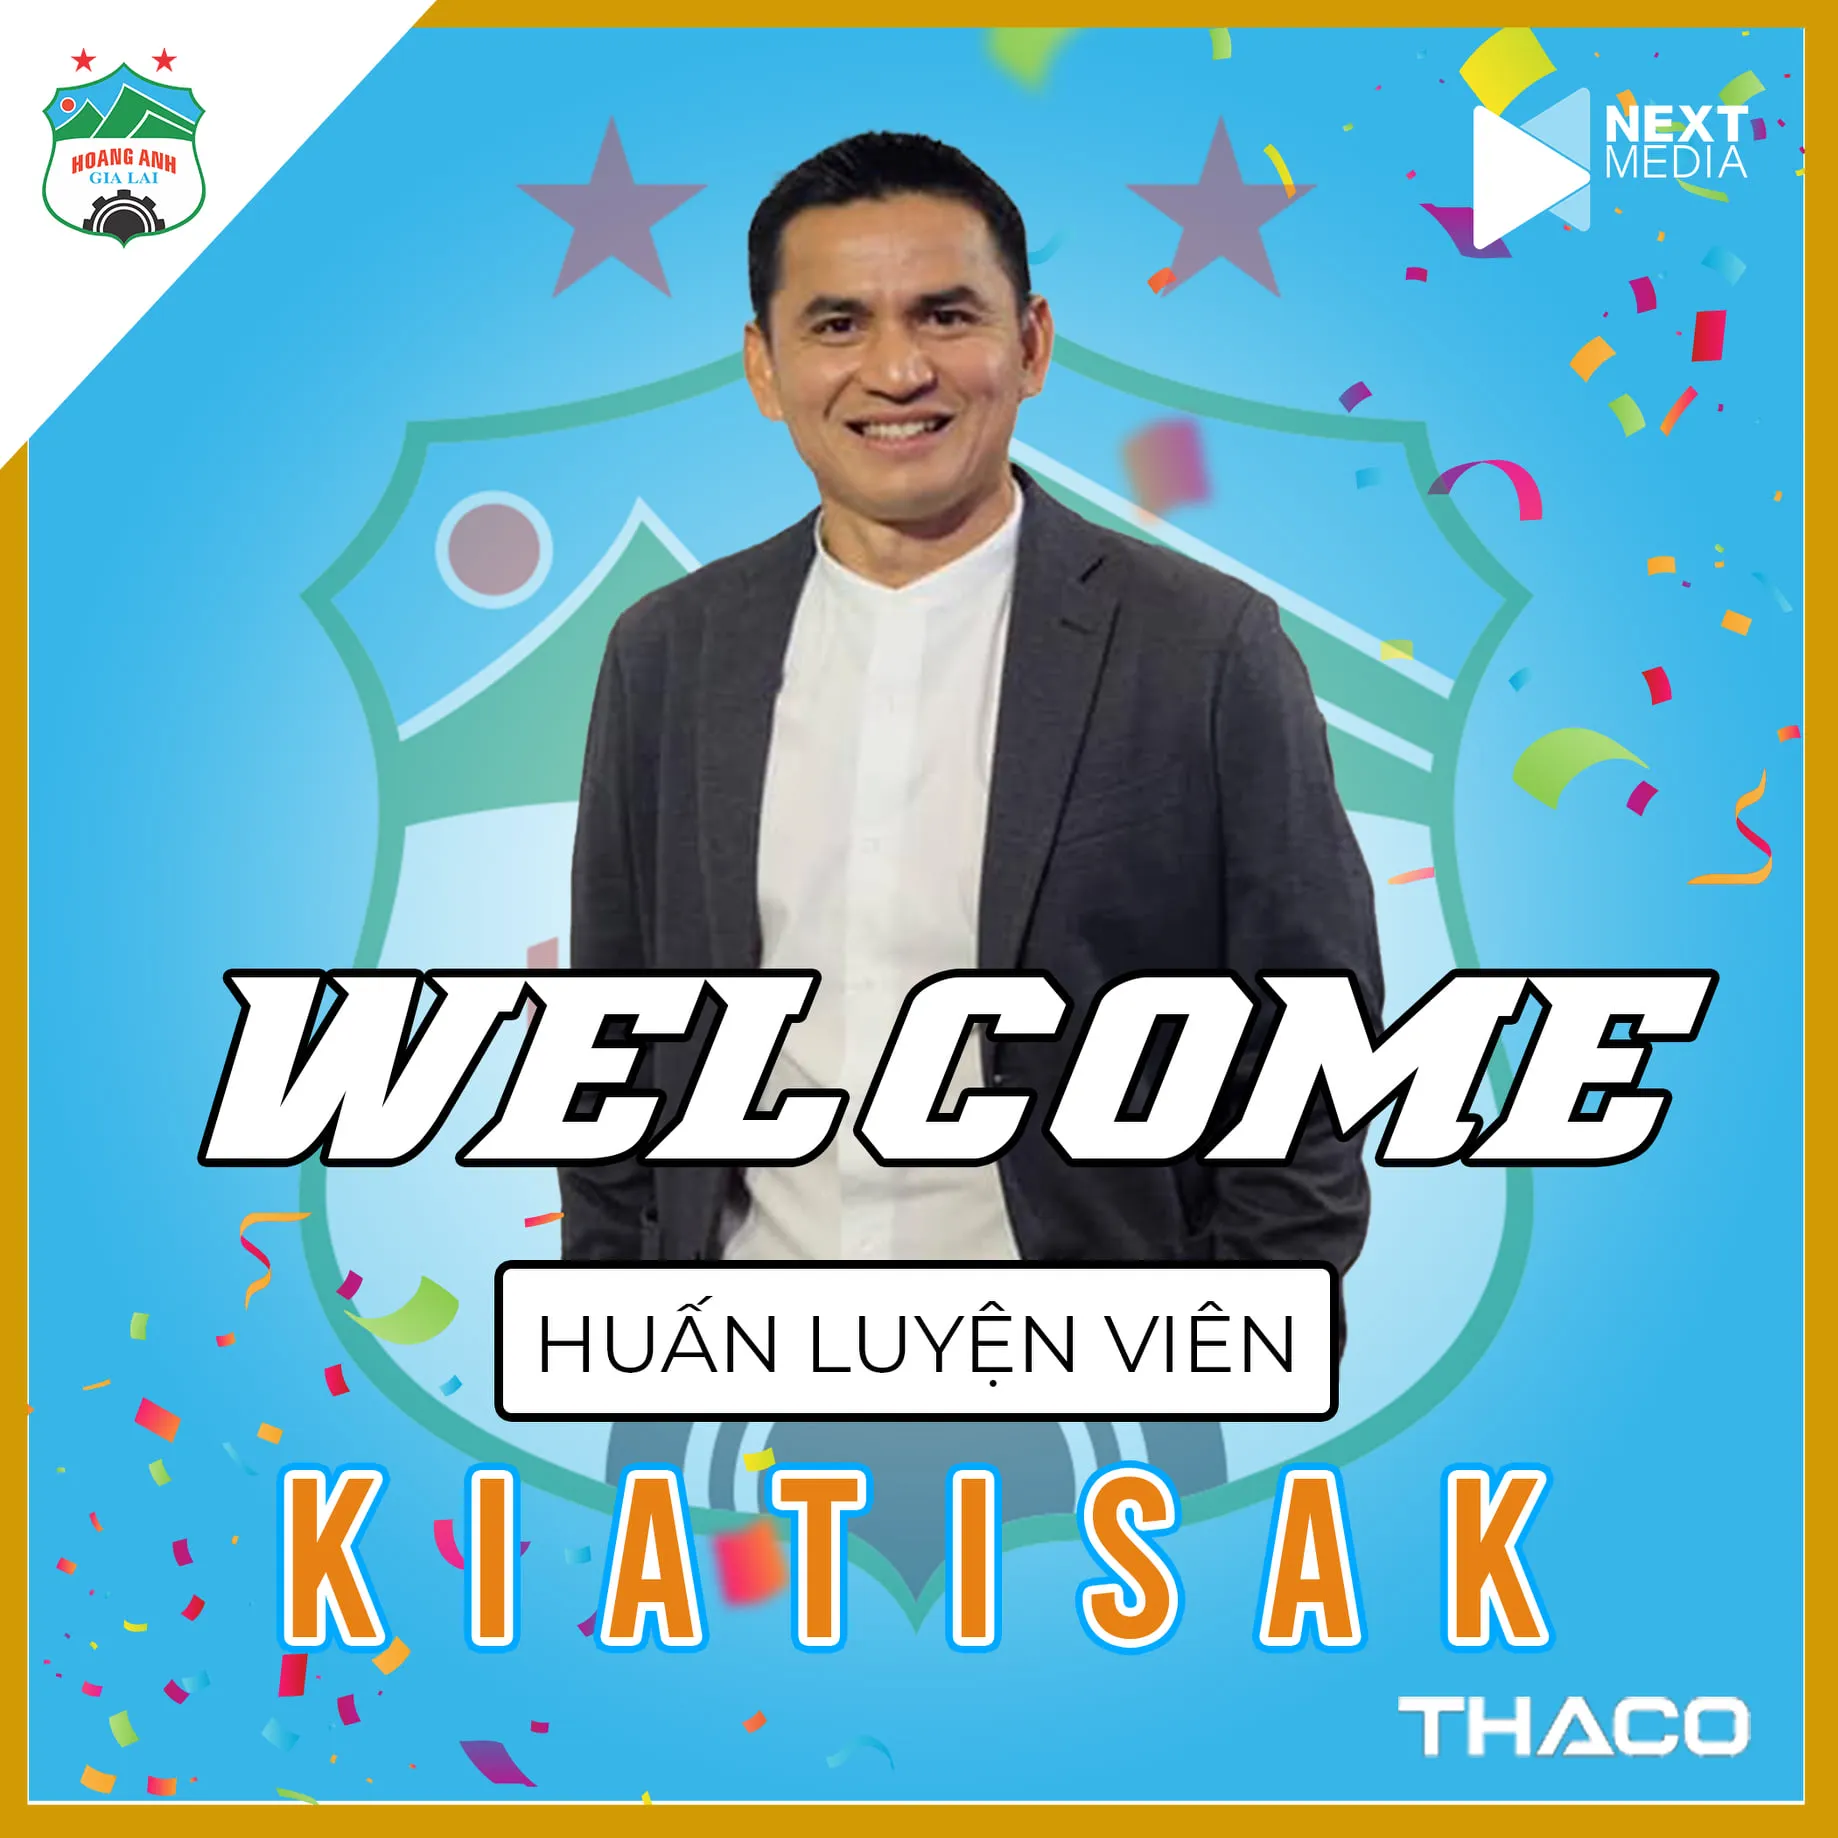 Kiatisak chính thức trở thành HLV trưởng HAGL